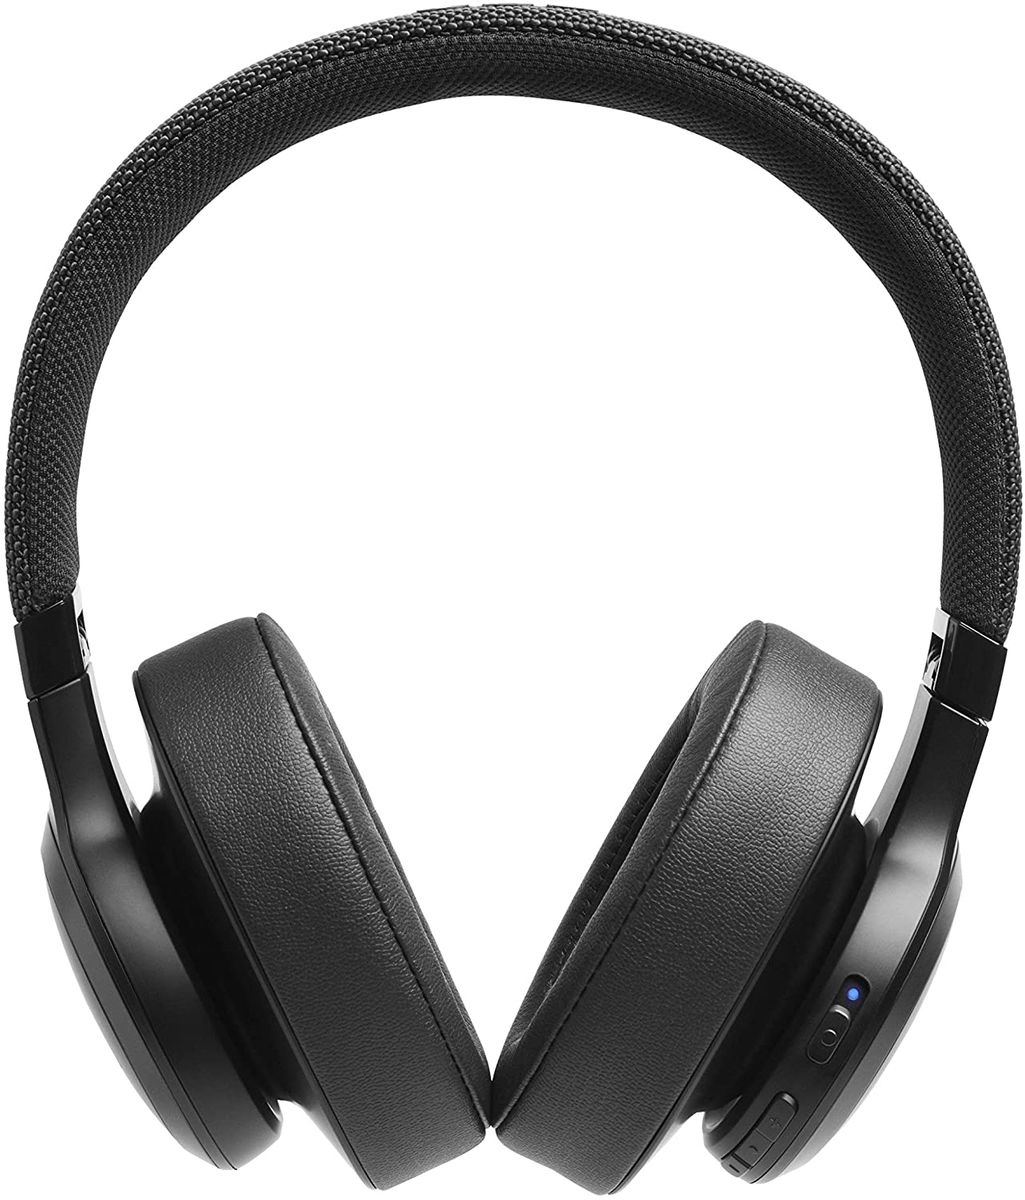 JBL LIVE 500BT kabellose Over-Ear Kopfhörer in Schwarz – Bluetooth Ohrhörer mit 30 Stunden Akkulaufzeit & Alexa-Integration – Musik hören, streamen und telefonieren unterwegs Schwarz Single